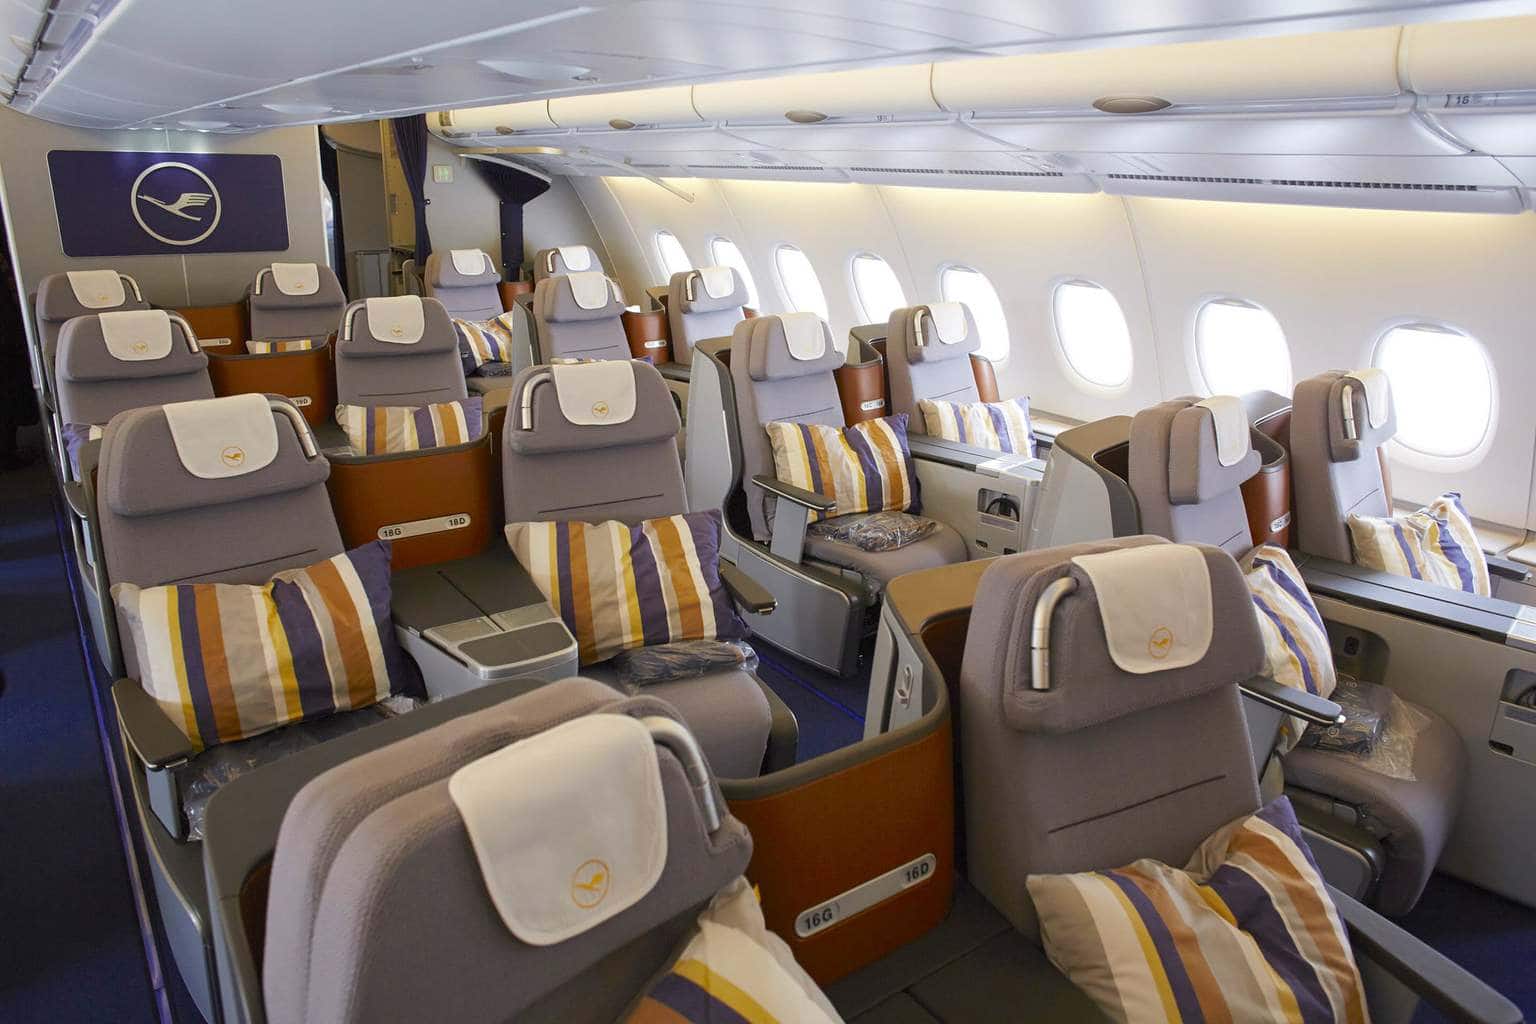 Lufthansa A380 Business Class seating